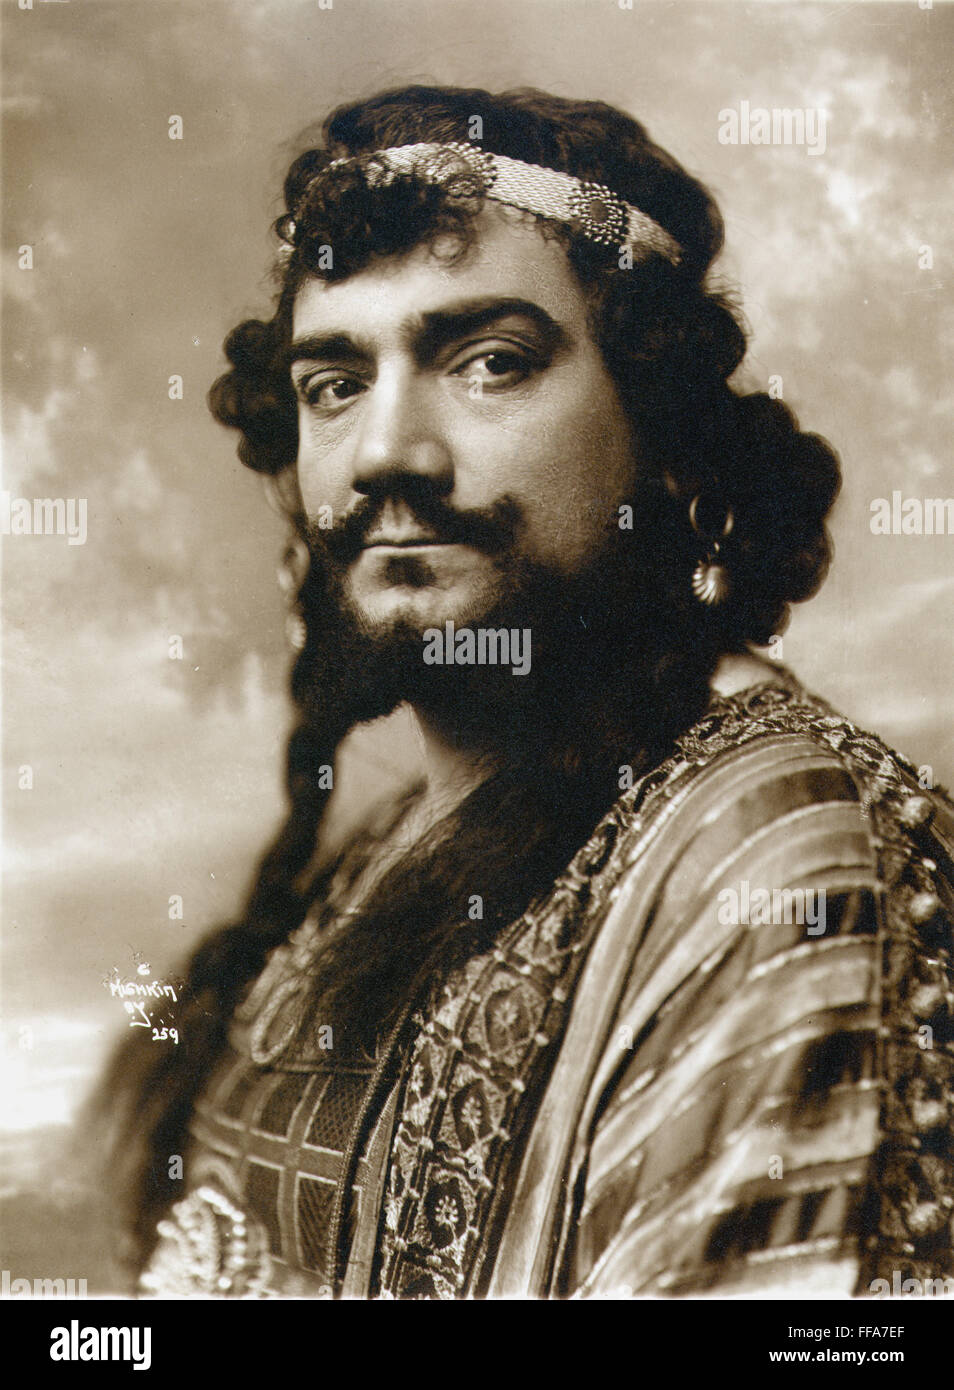 ENRICO CARUSO (1873-1921). Italian tenor. Stock Photo